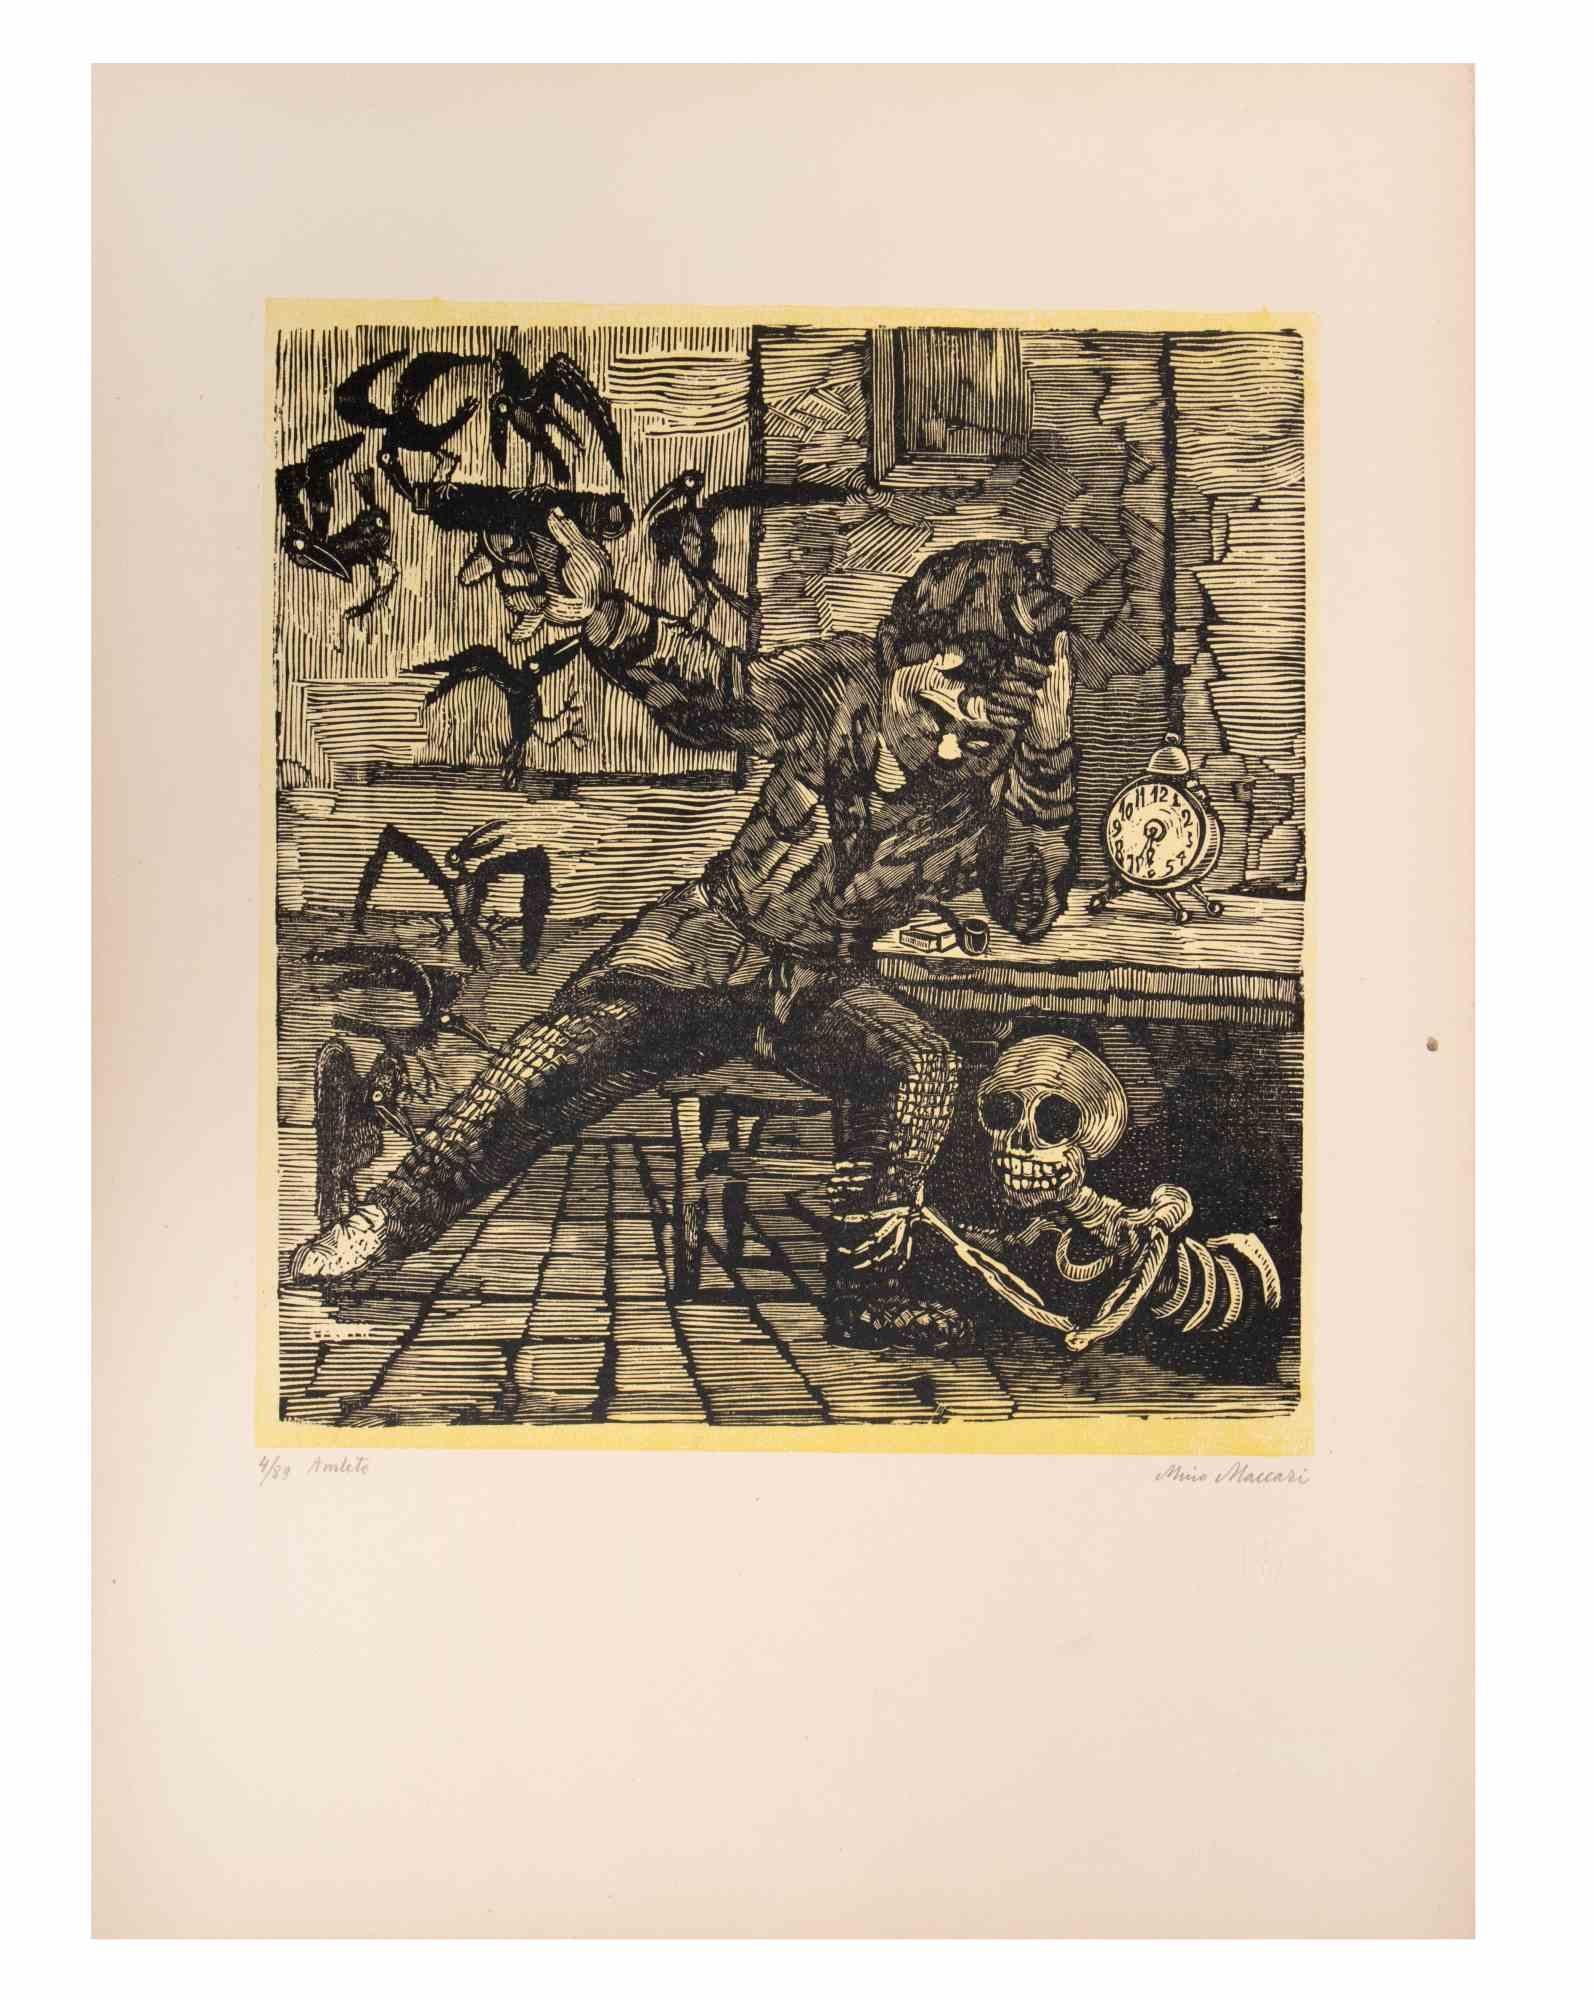 Hamlet (Amleto) est une œuvre d'art réalisée par Mino Maccari (1924-1989) au milieu du XXe siècle.

Gravure sur bois B./W. sur papier. Signé à la main dans la partie inférieure, numéroté 4/89 exemplaires et titré dans la marge gauche.

Bonnes